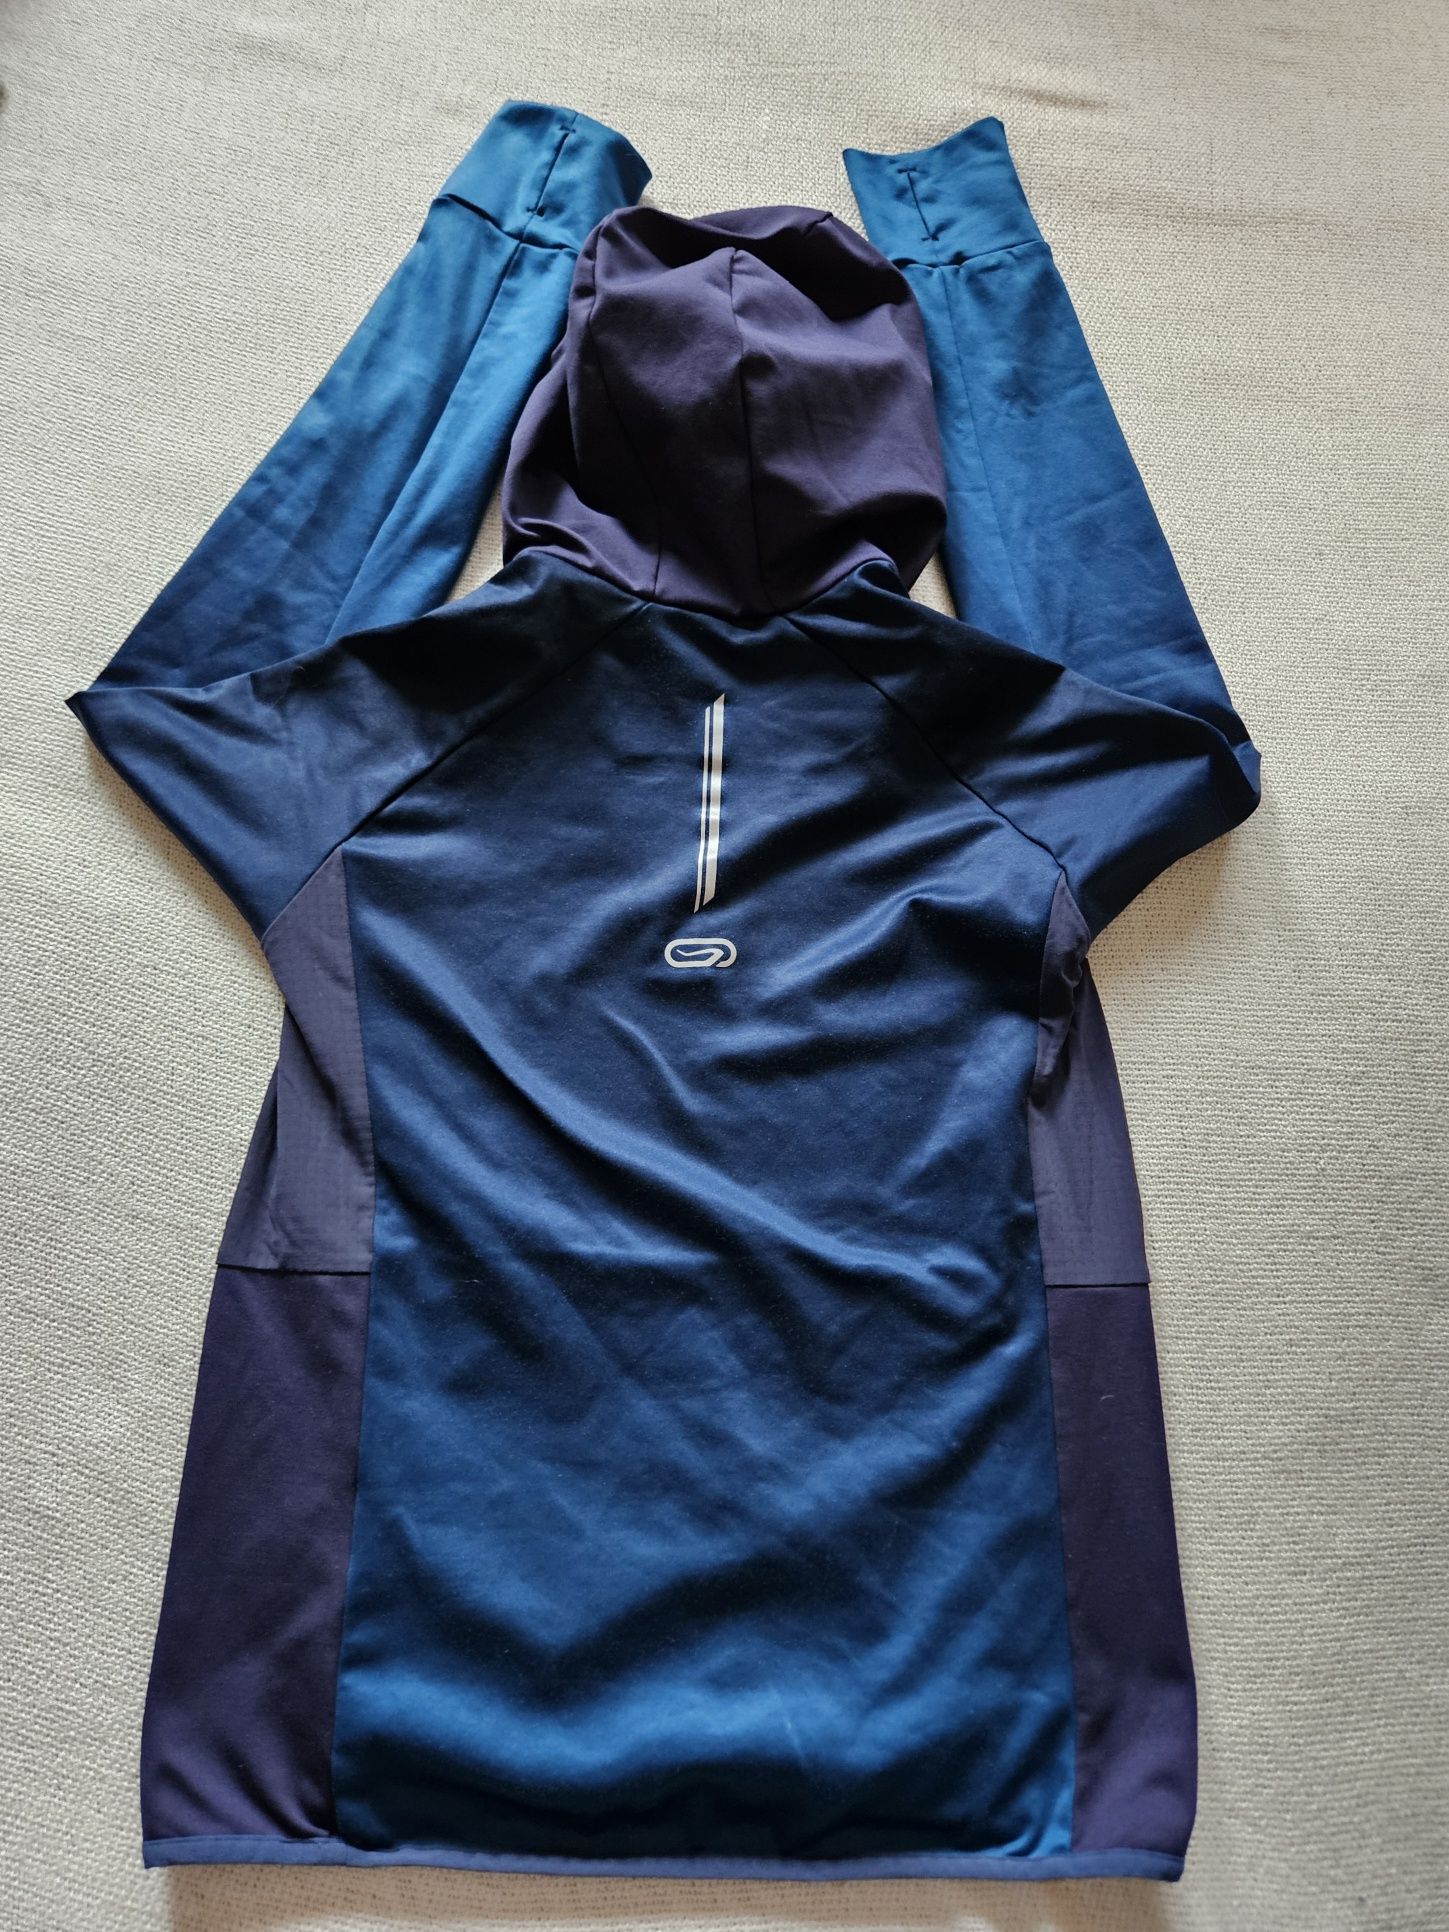 Ciepła bluza z kapturem, odzież termiczna firmy Kalenji rozm. 158